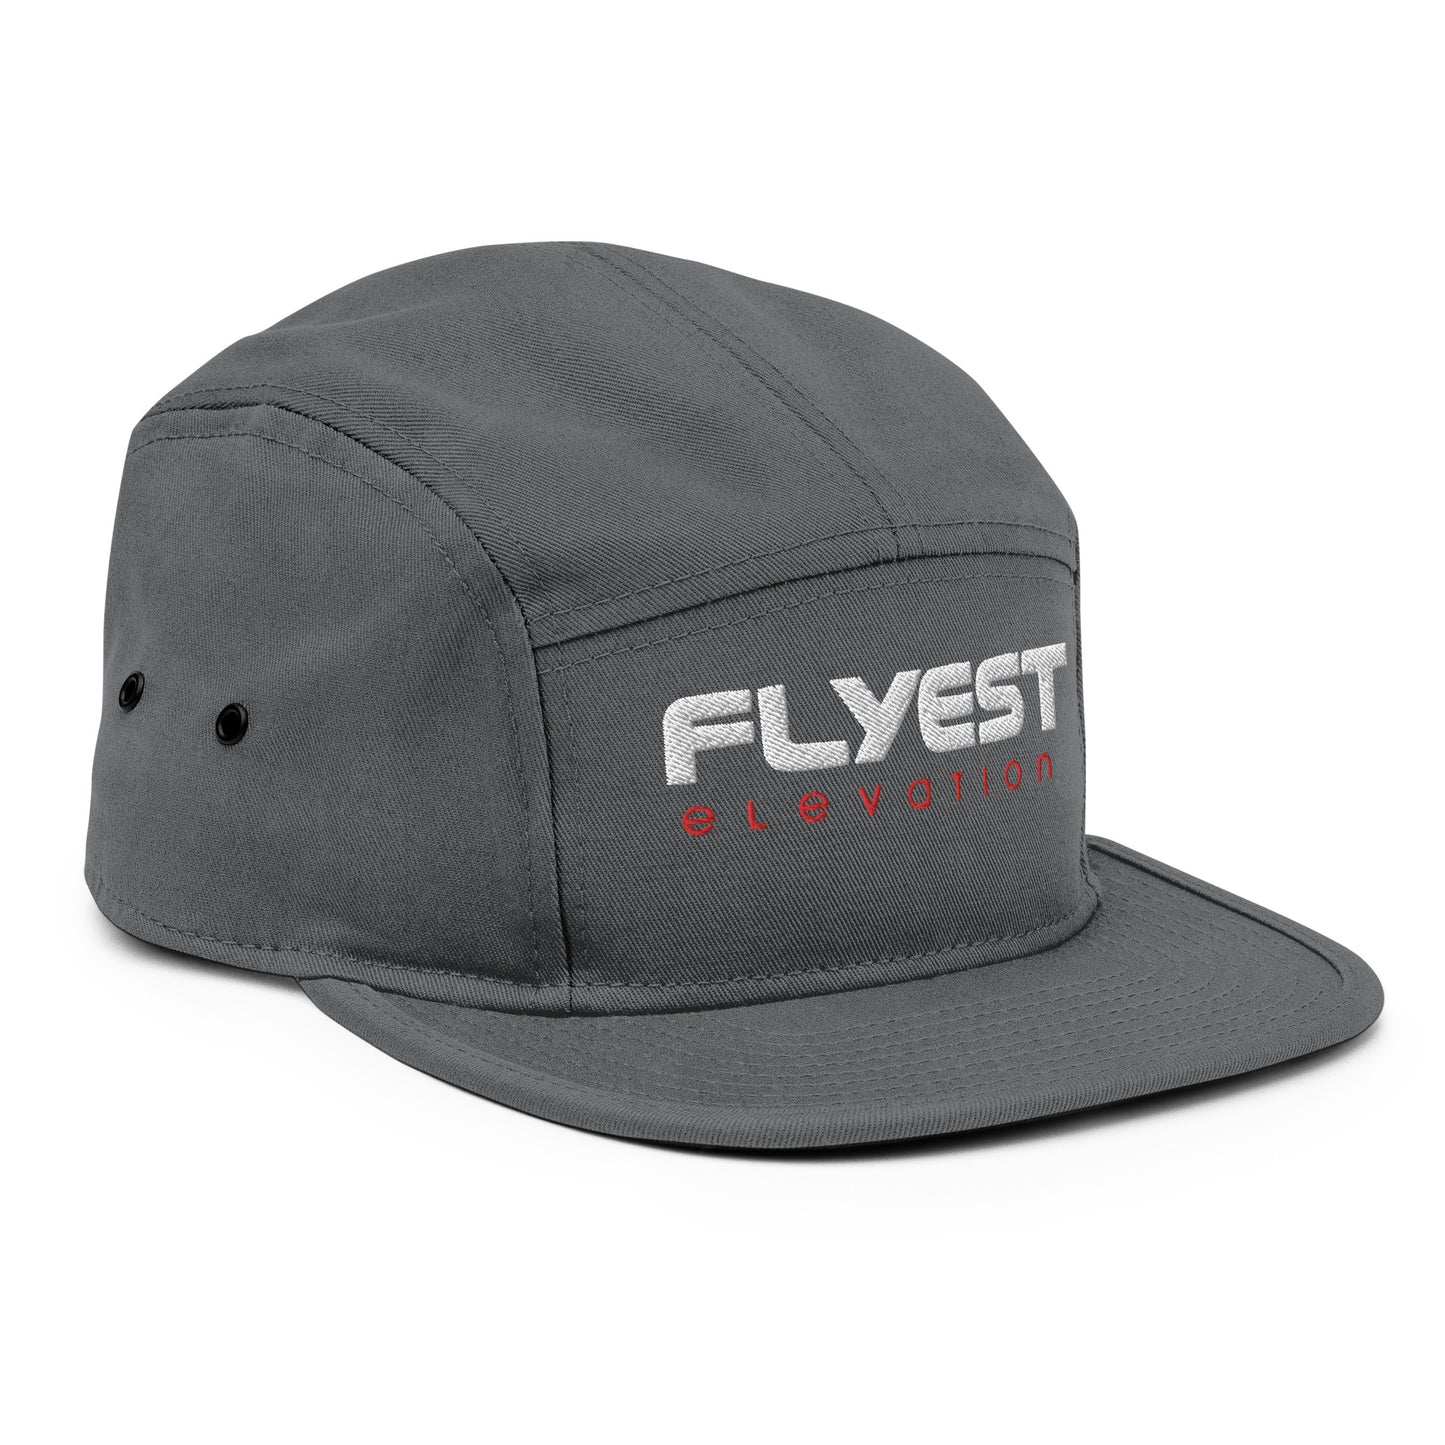 Flyest Elevation Camper Cap